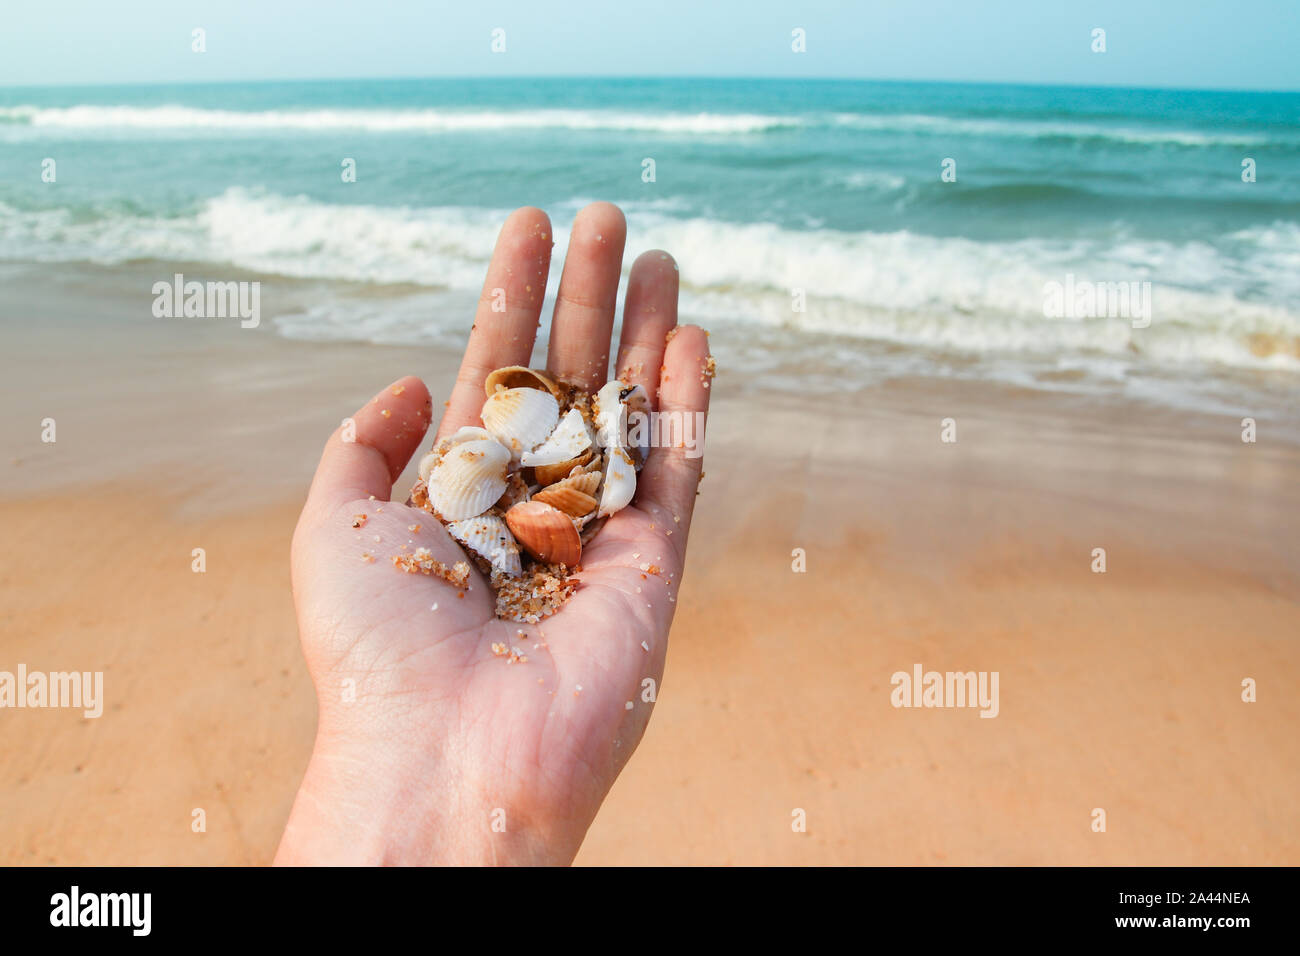 Recoger conchas marinas en la playa y disfrutar del verano a pesar de la amenaza de la pandemia de covid-19 Foto de stock